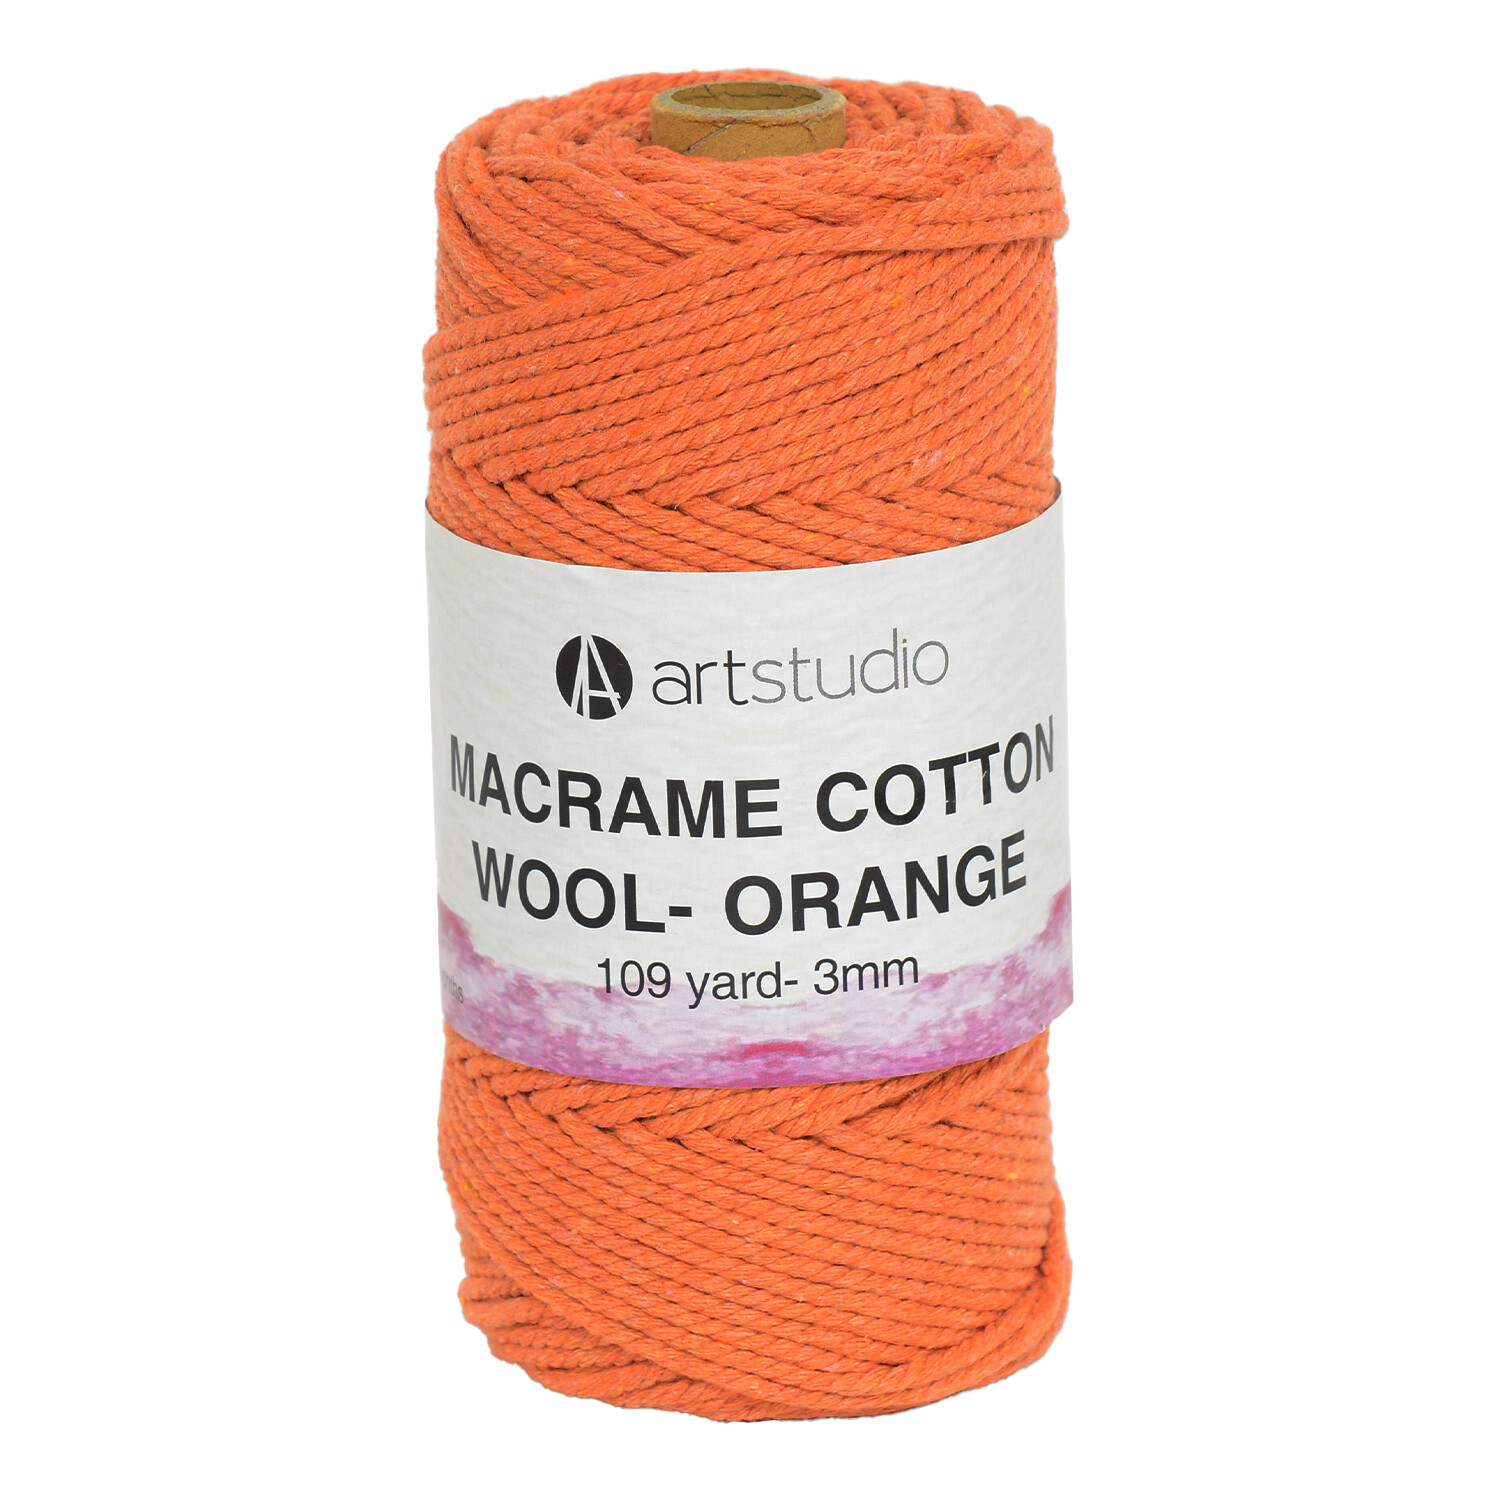 Art Studio Macrame Cotton Wool - Orange Image